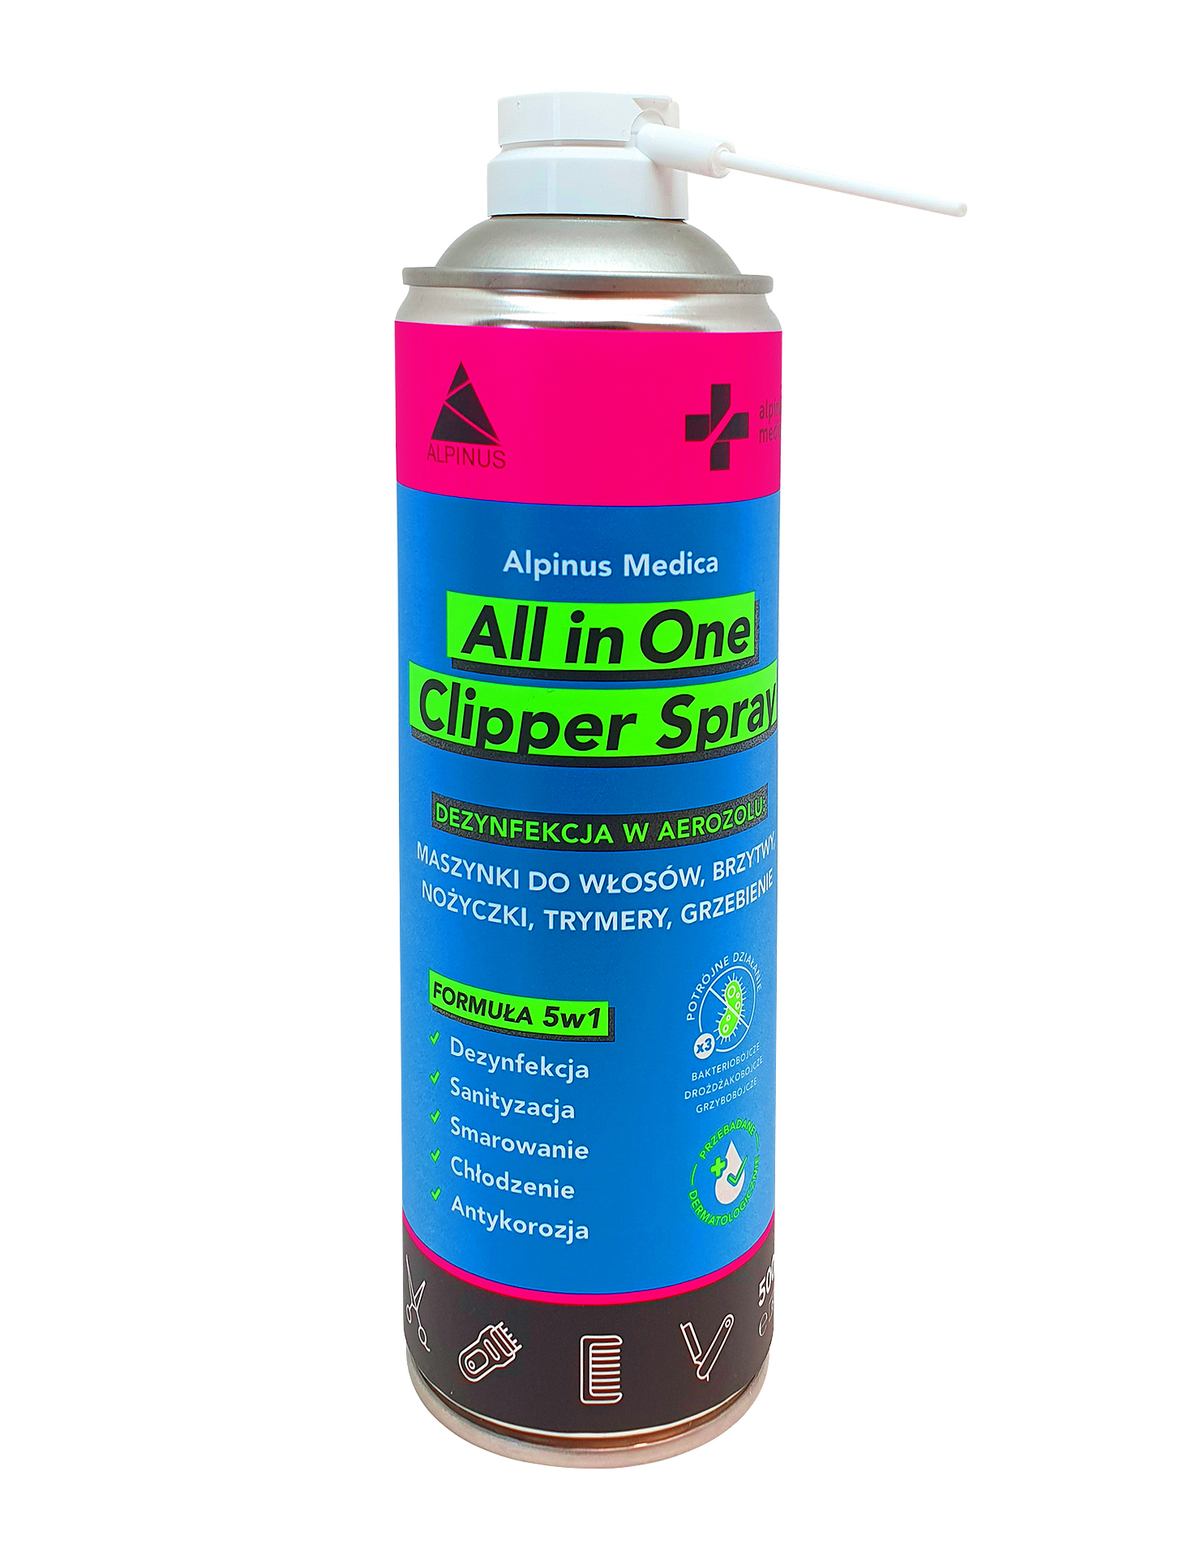 Alpinus Medica Clipper Spray – Dezynfekcja w aerozolu 500 ml